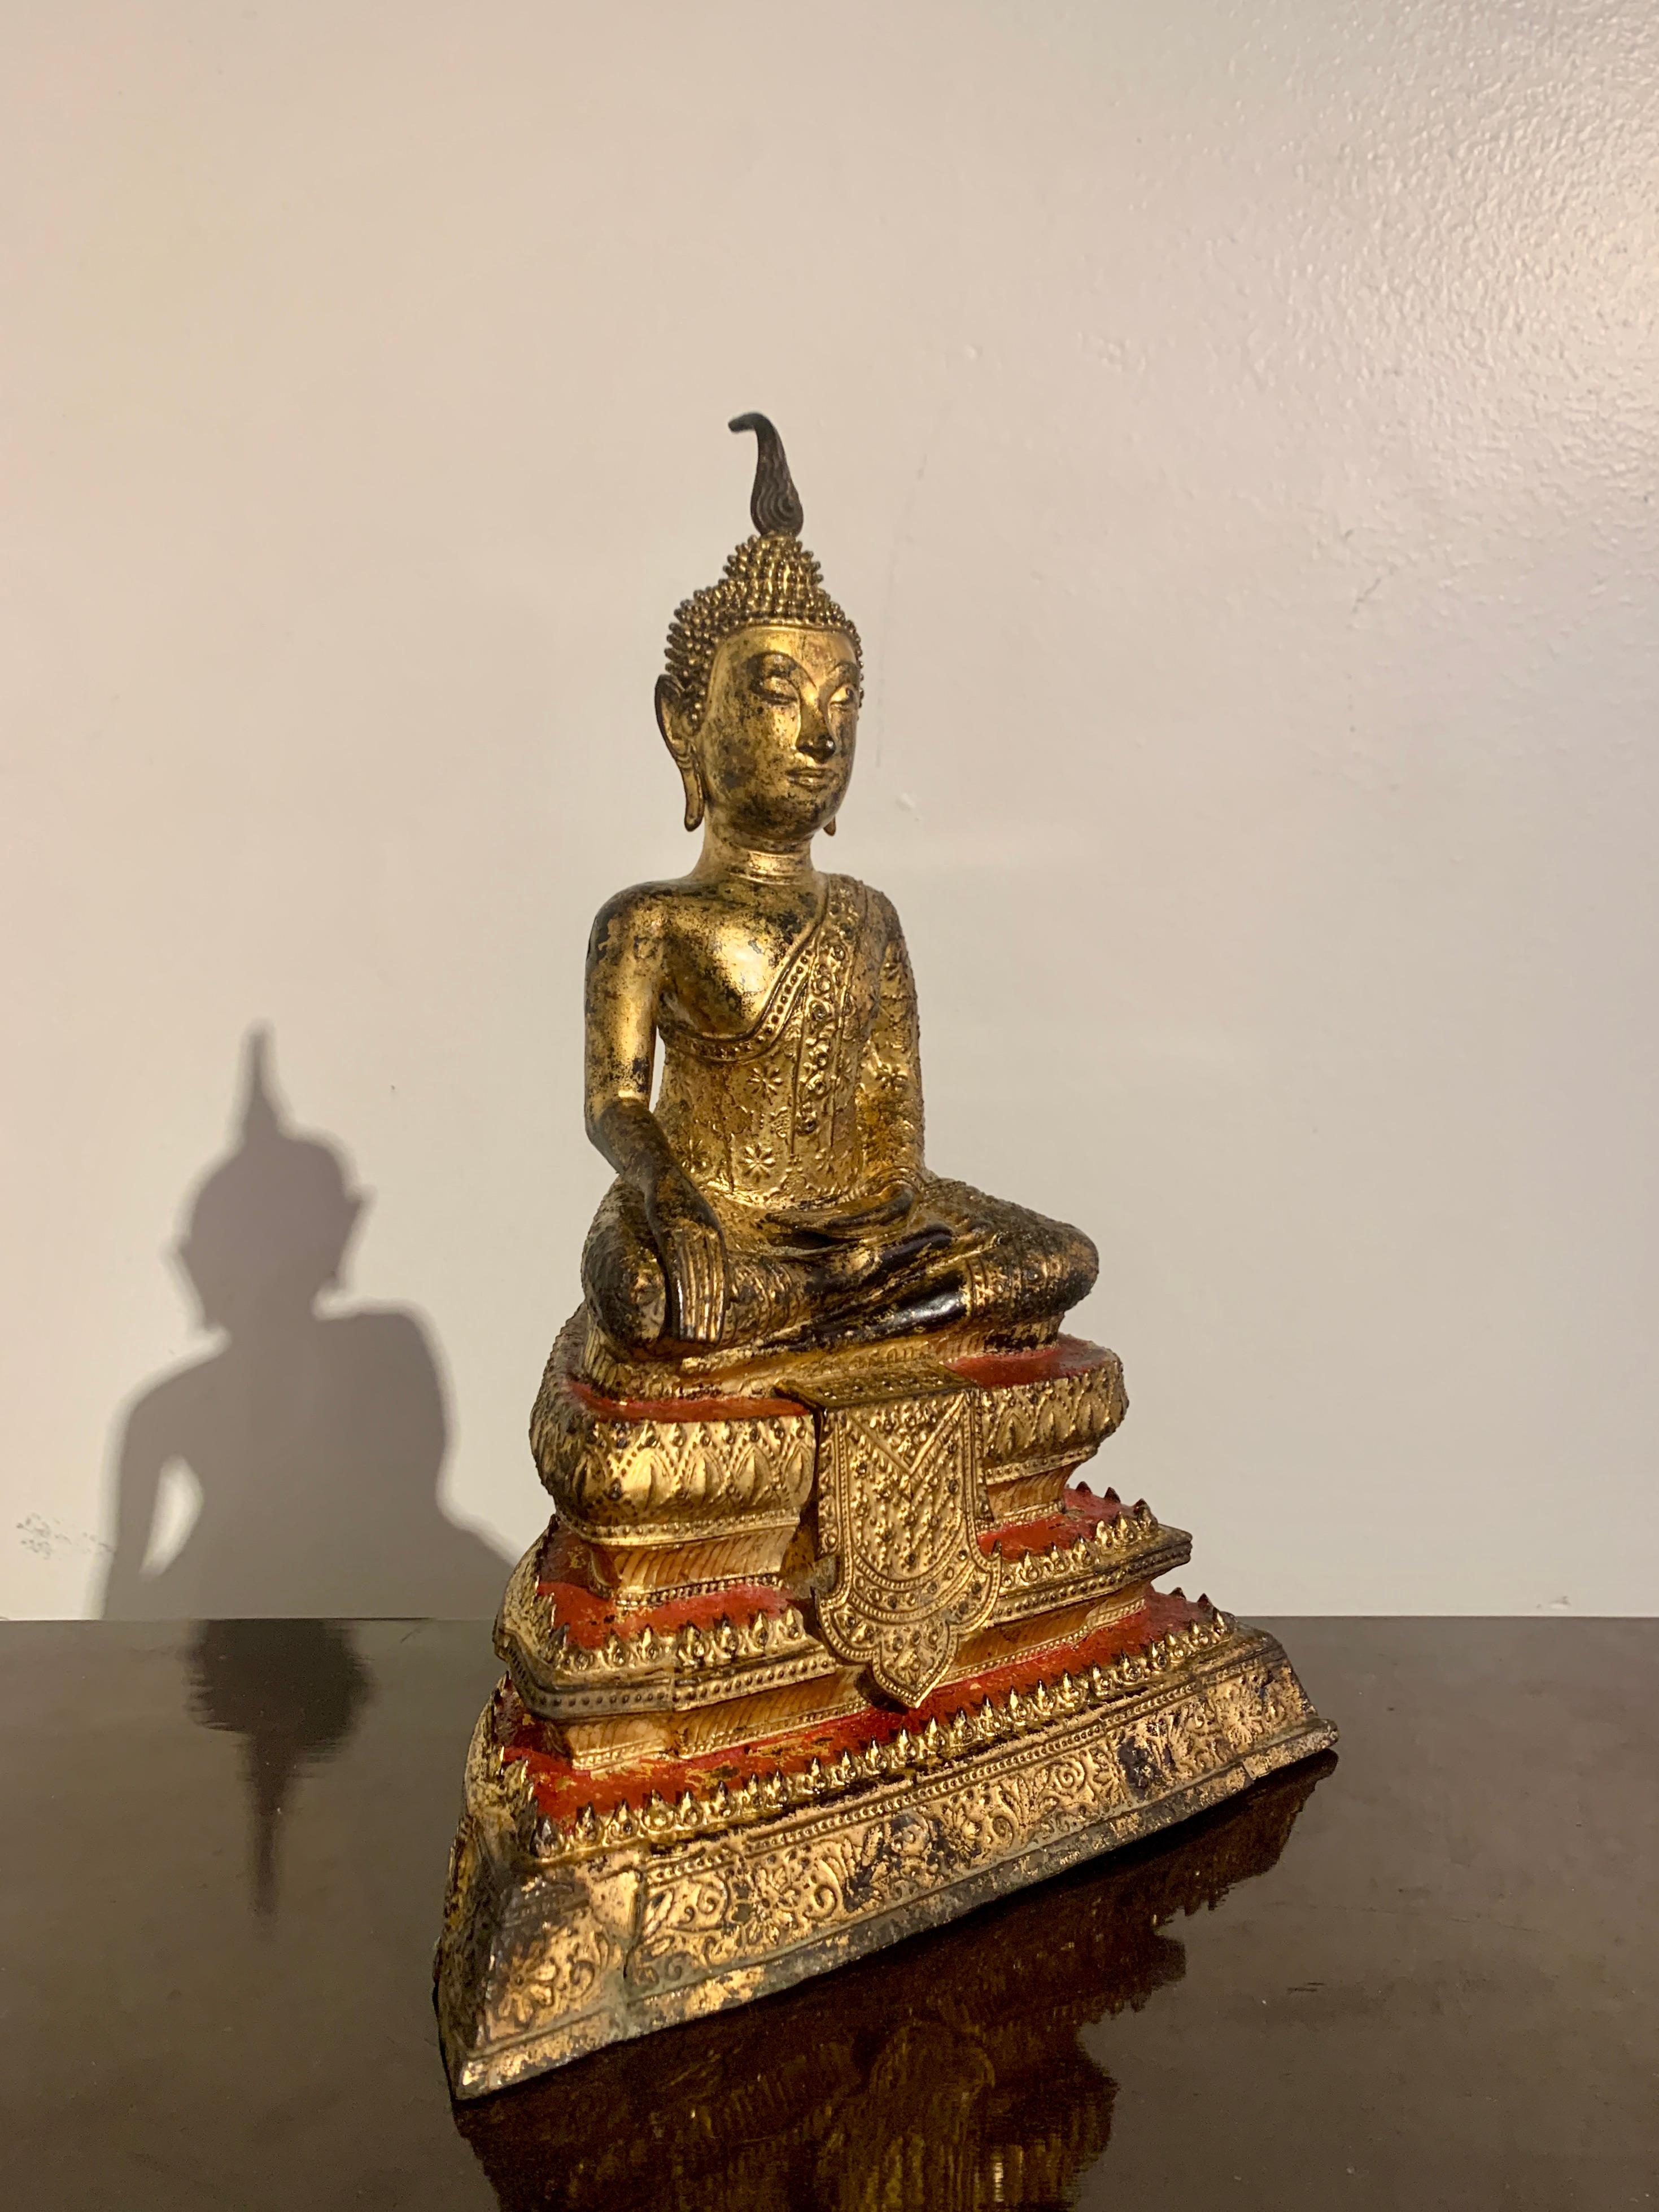 Eine schöne thailändische lackierte und vergoldete Bronzefigur des historischen Buddha, Shakyamuni, dargestellt in Maravijaya, Rattanakosin Periode, Anfang bis Mitte des 19. Jahrhunderts, Thailand. 

Der Buddha wird in der Haltung des Maravijaya,